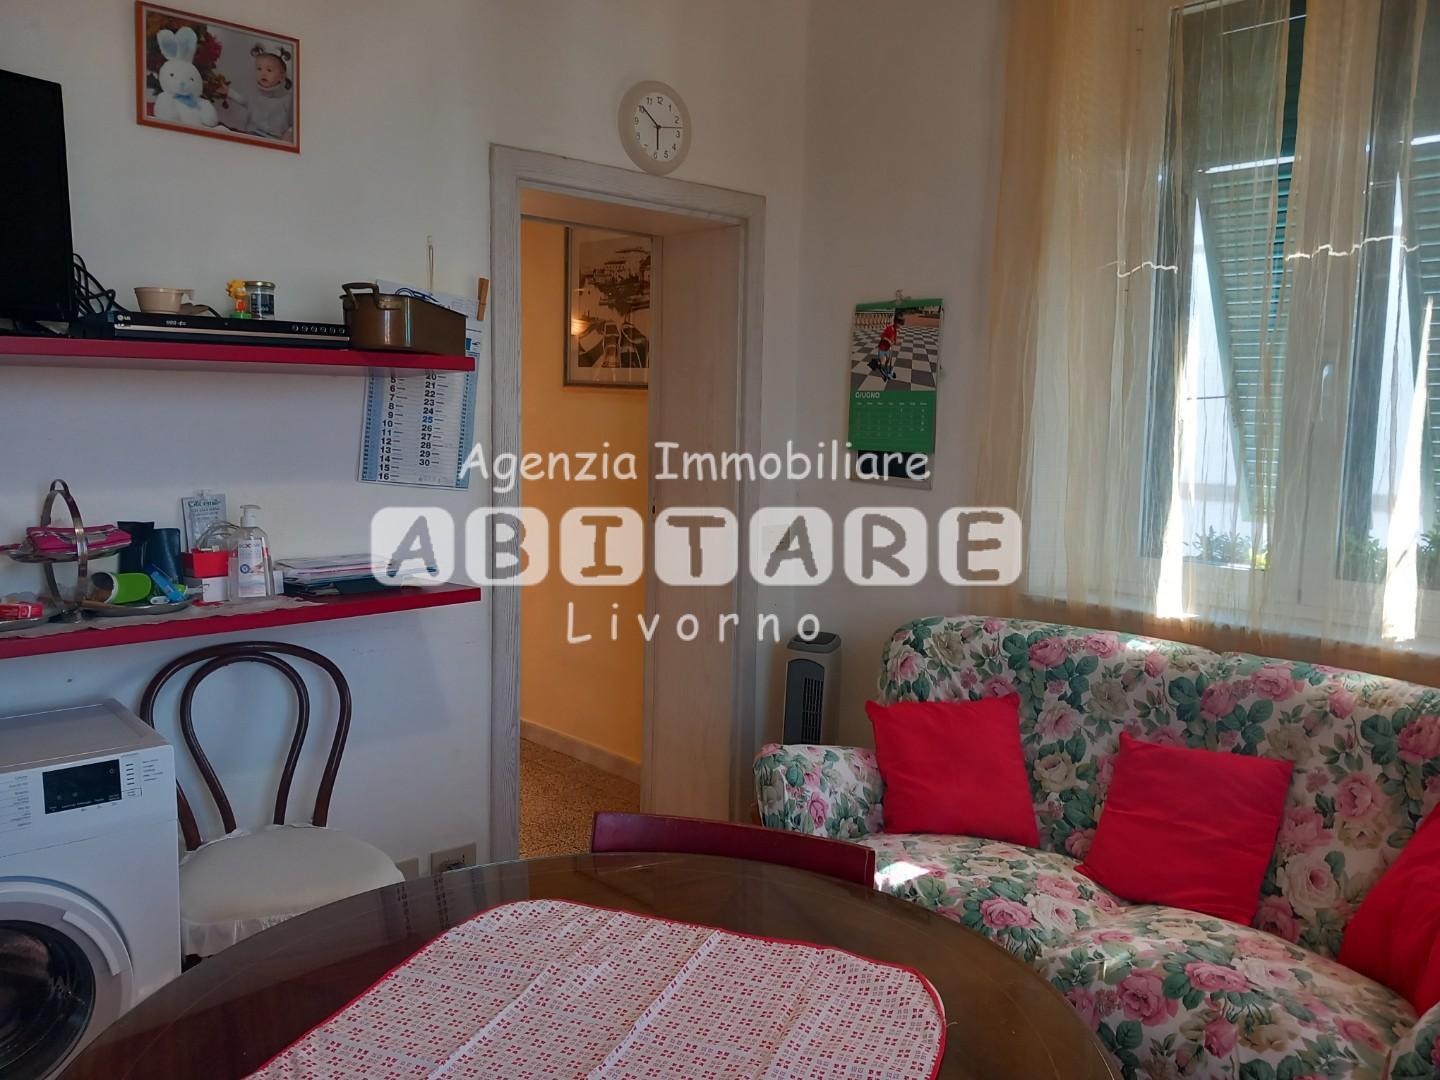 Appartamento in vendita, Livorno s. marco